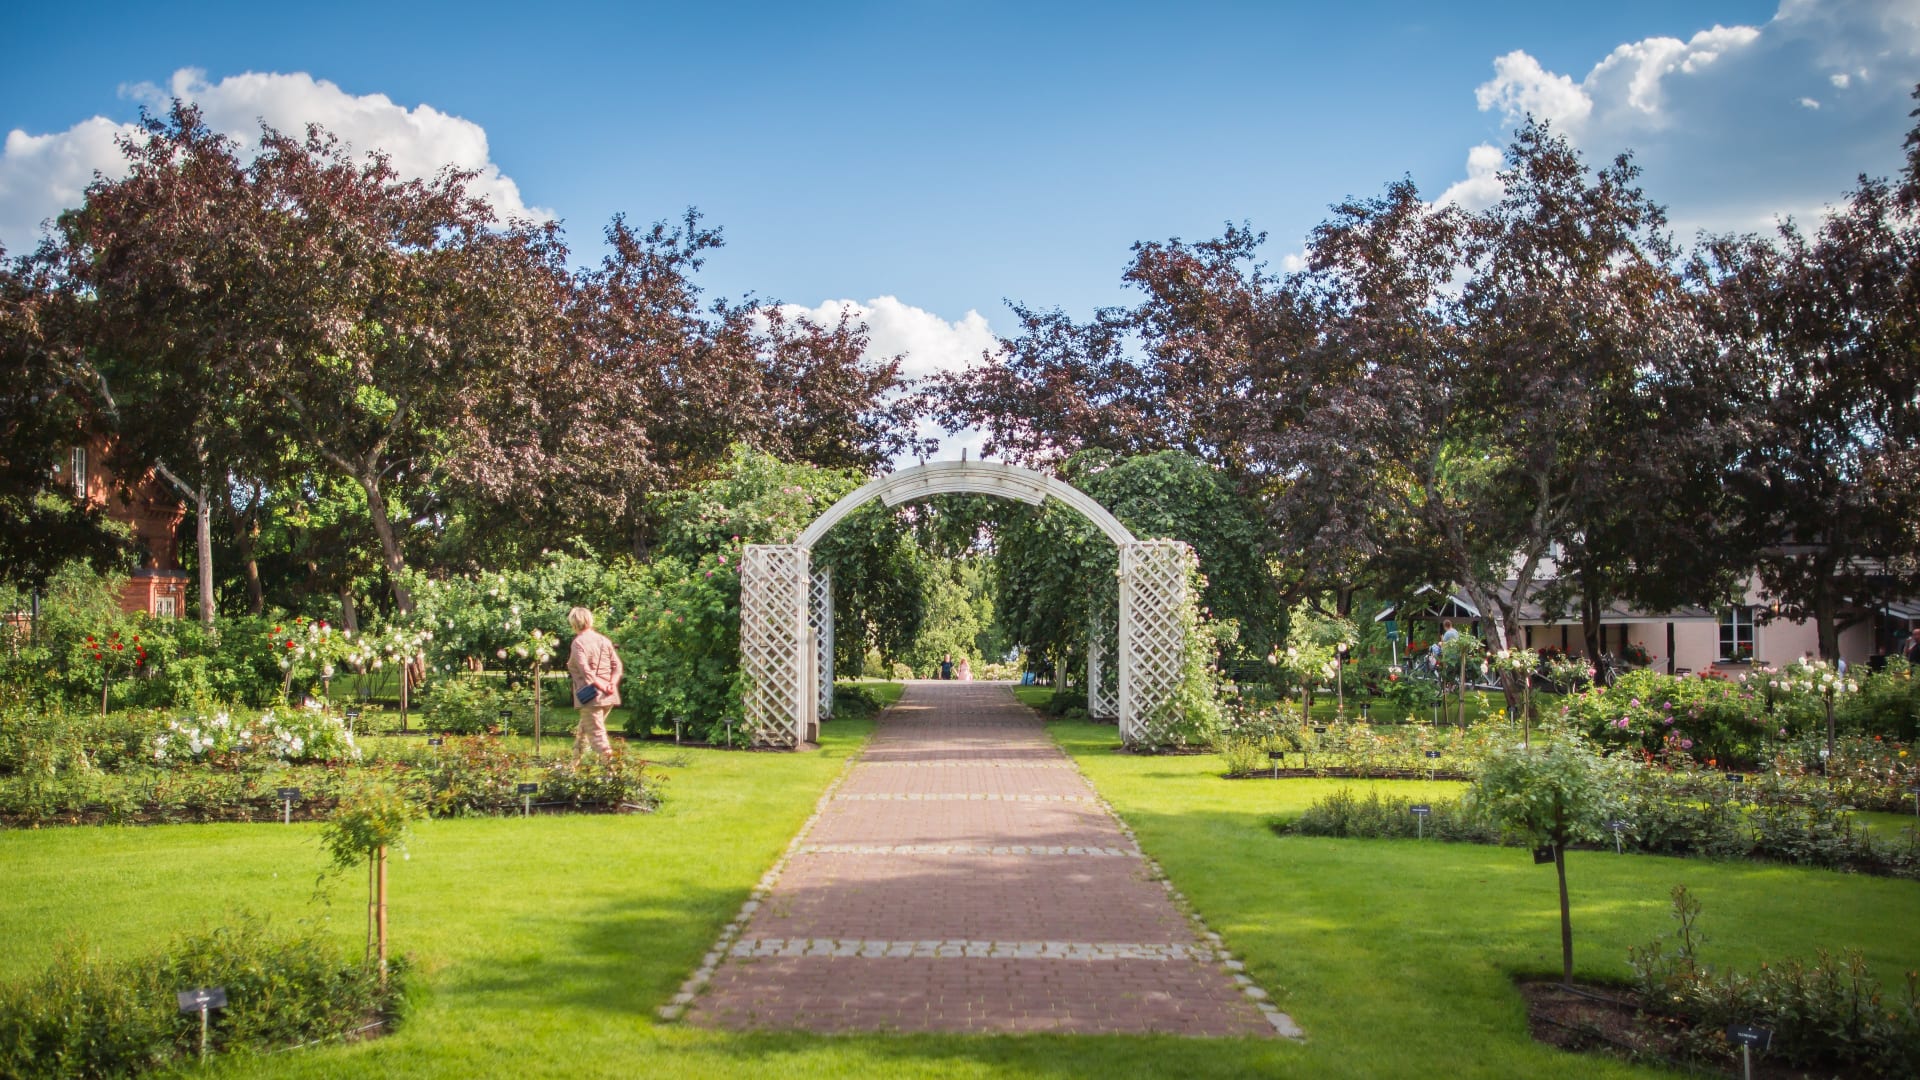 Arboretum rose garden in summer